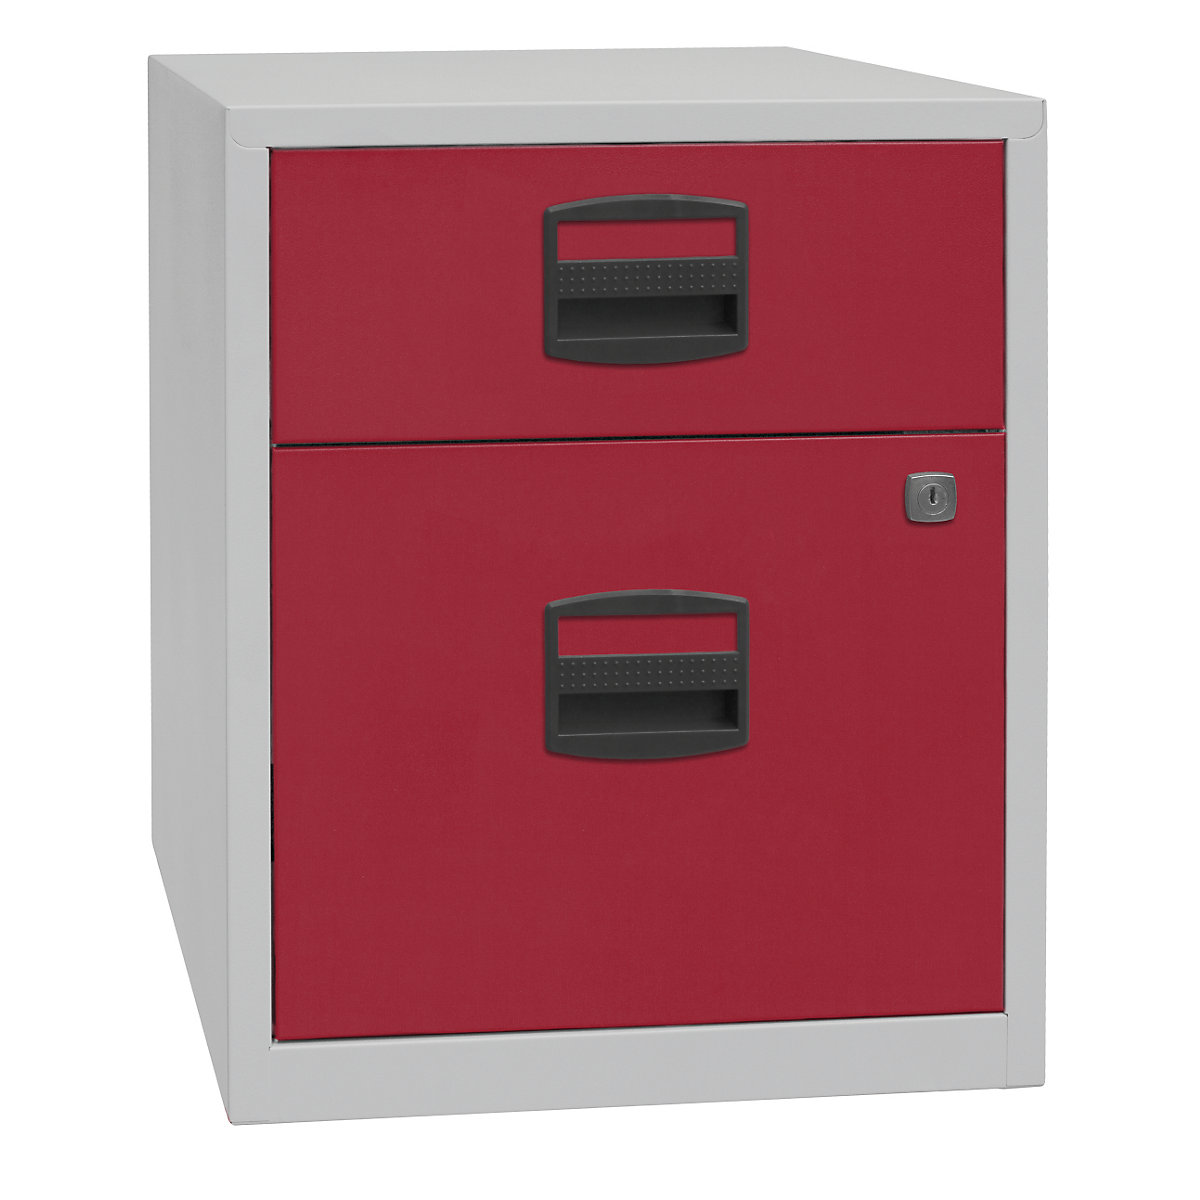 Mobiletto mobile PFA – BISLEY, 1 cassetto, 1 cassetto per cartelle sospese, grigio chiaro / rosso cardinale-2